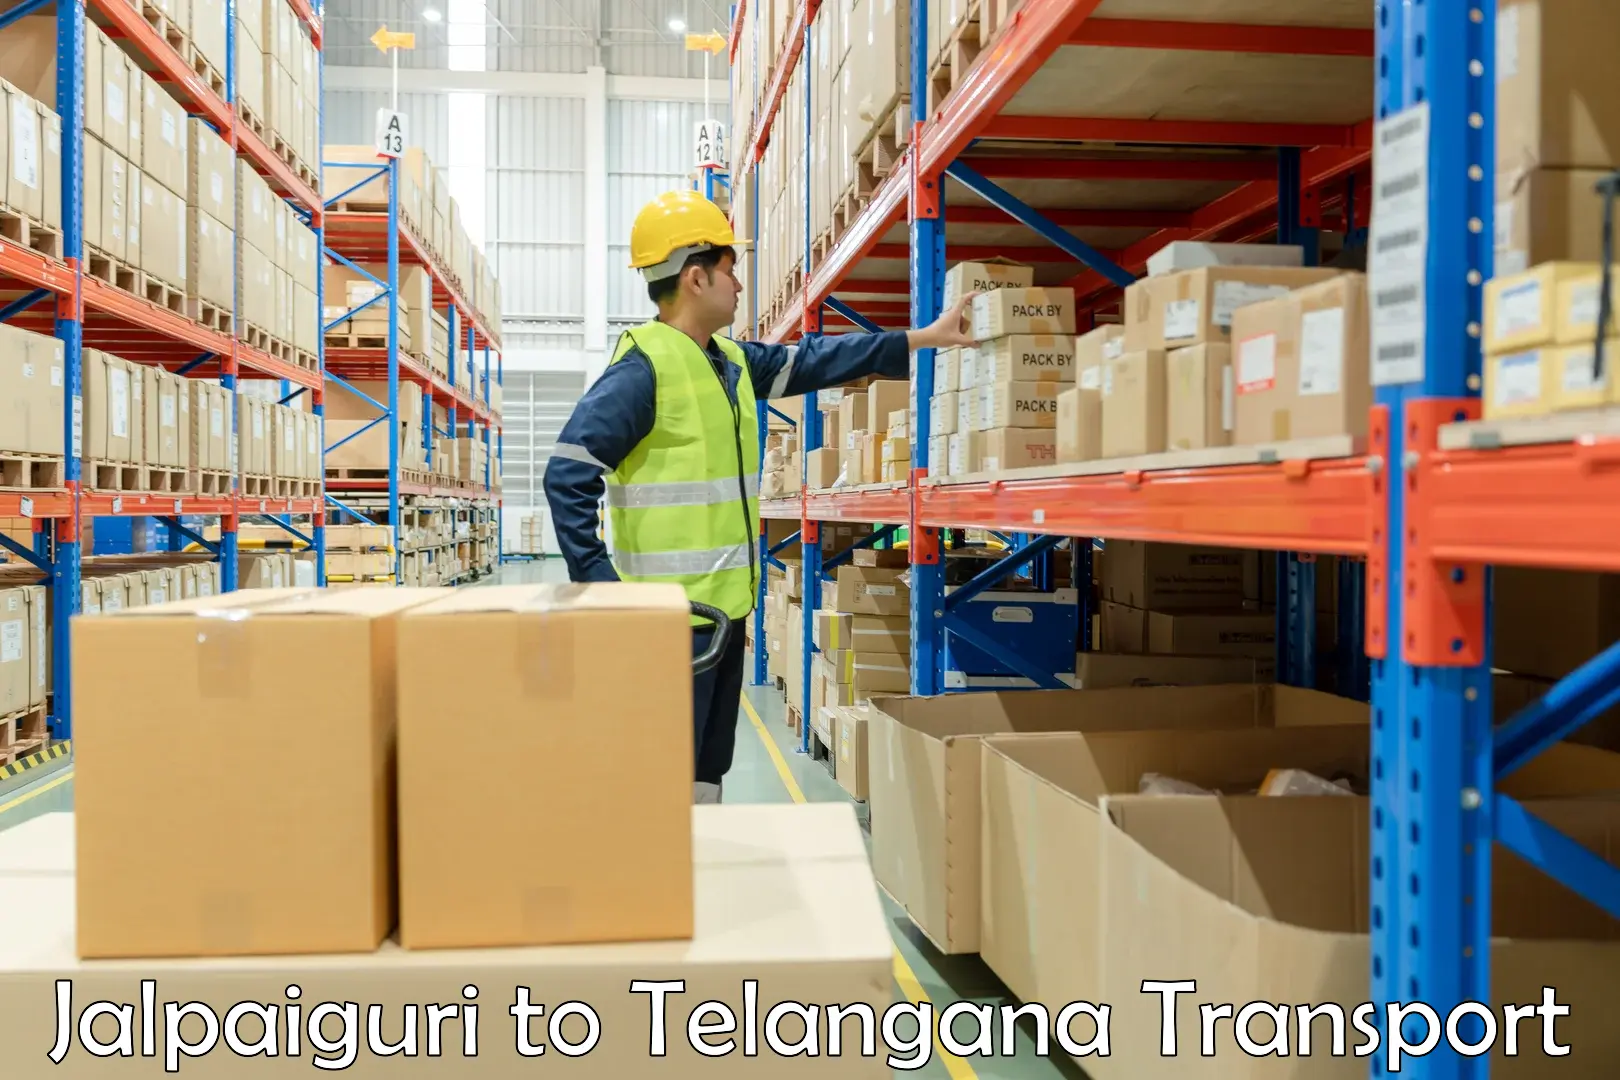 Daily transport service Jalpaiguri to Telangana